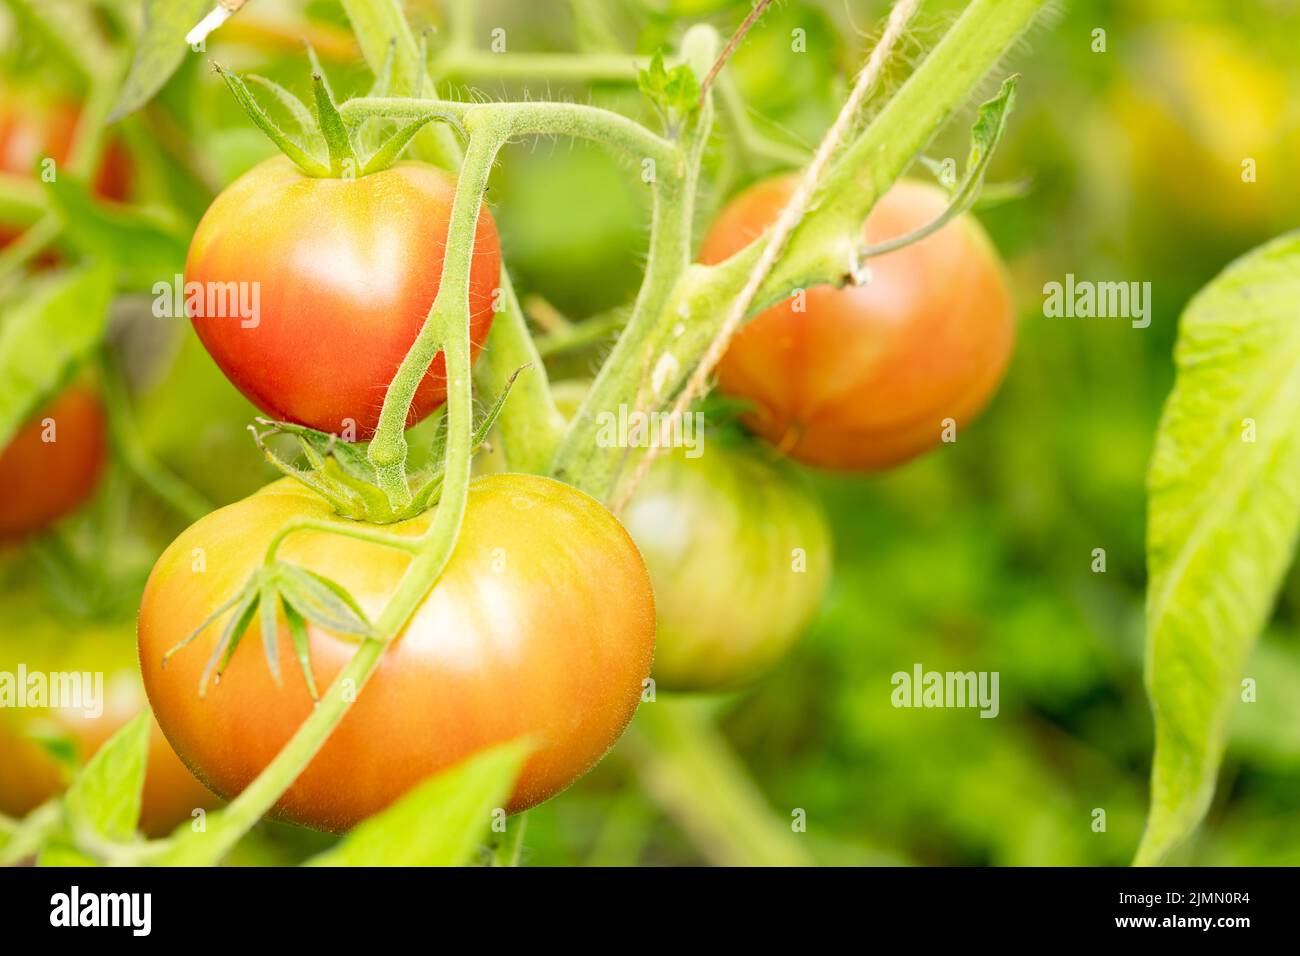 Variété de tomates rouges à rayures, mûrissement des tomates. Concept d'agriculture. Mise au point sélective. Gros plan Banque D'Images